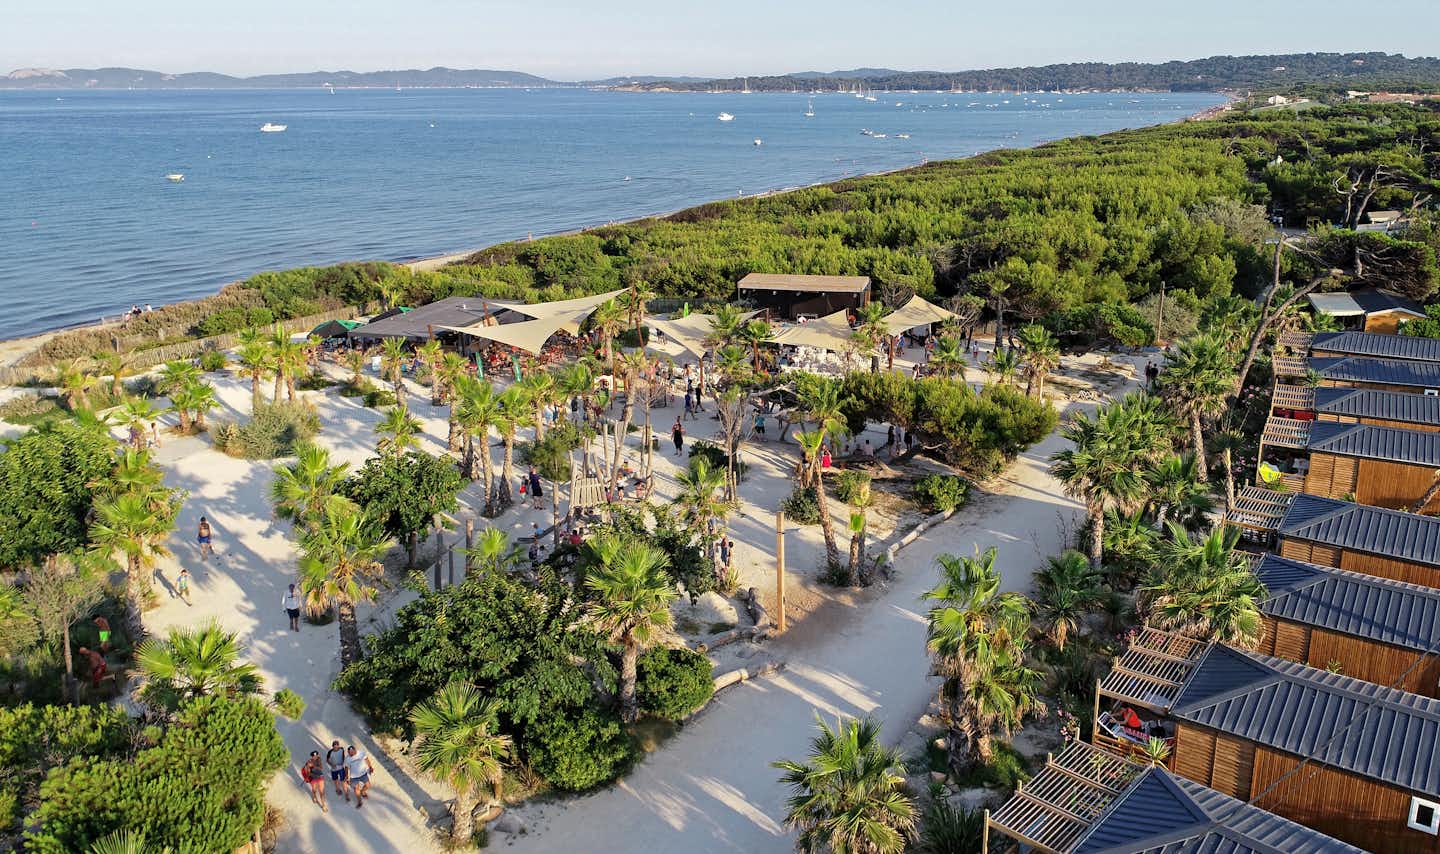 Campéole Eurosurf  -  Campingplatz mit Strand am Mittelmeer aus der Vogelperspektive